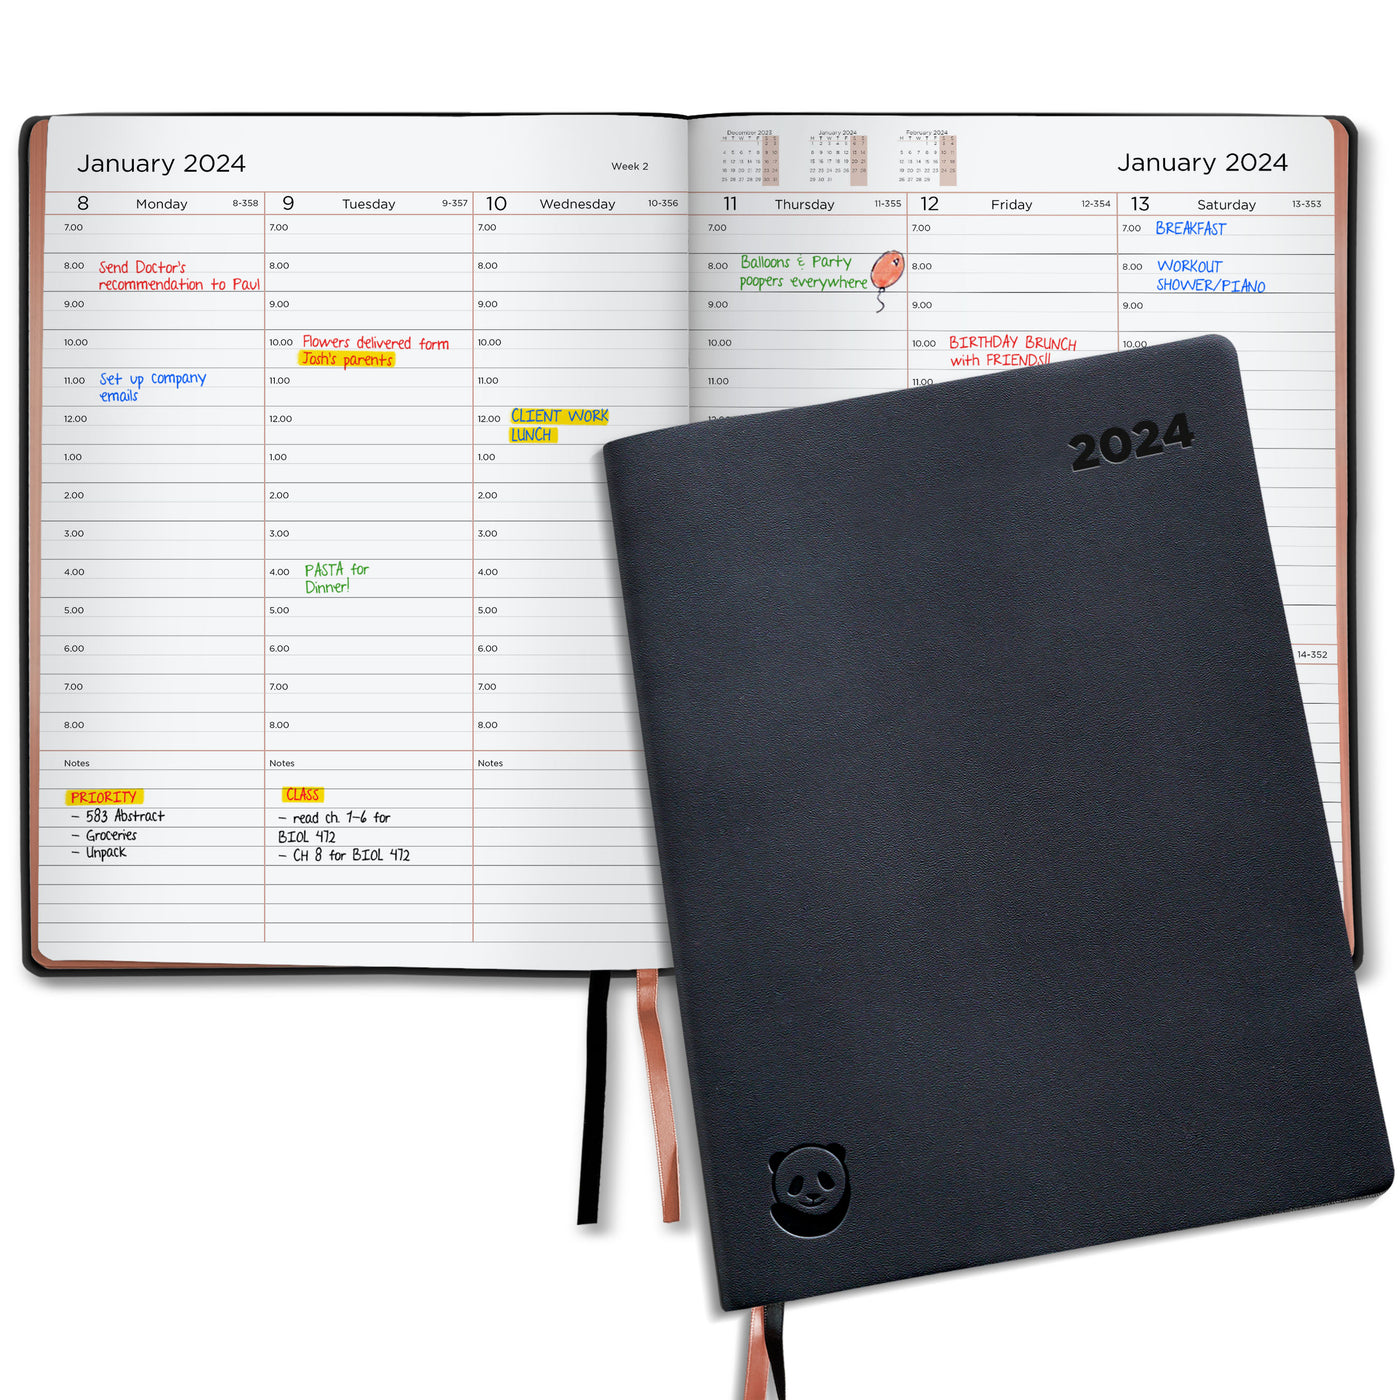 2024 Premium Diary – Smart Panda